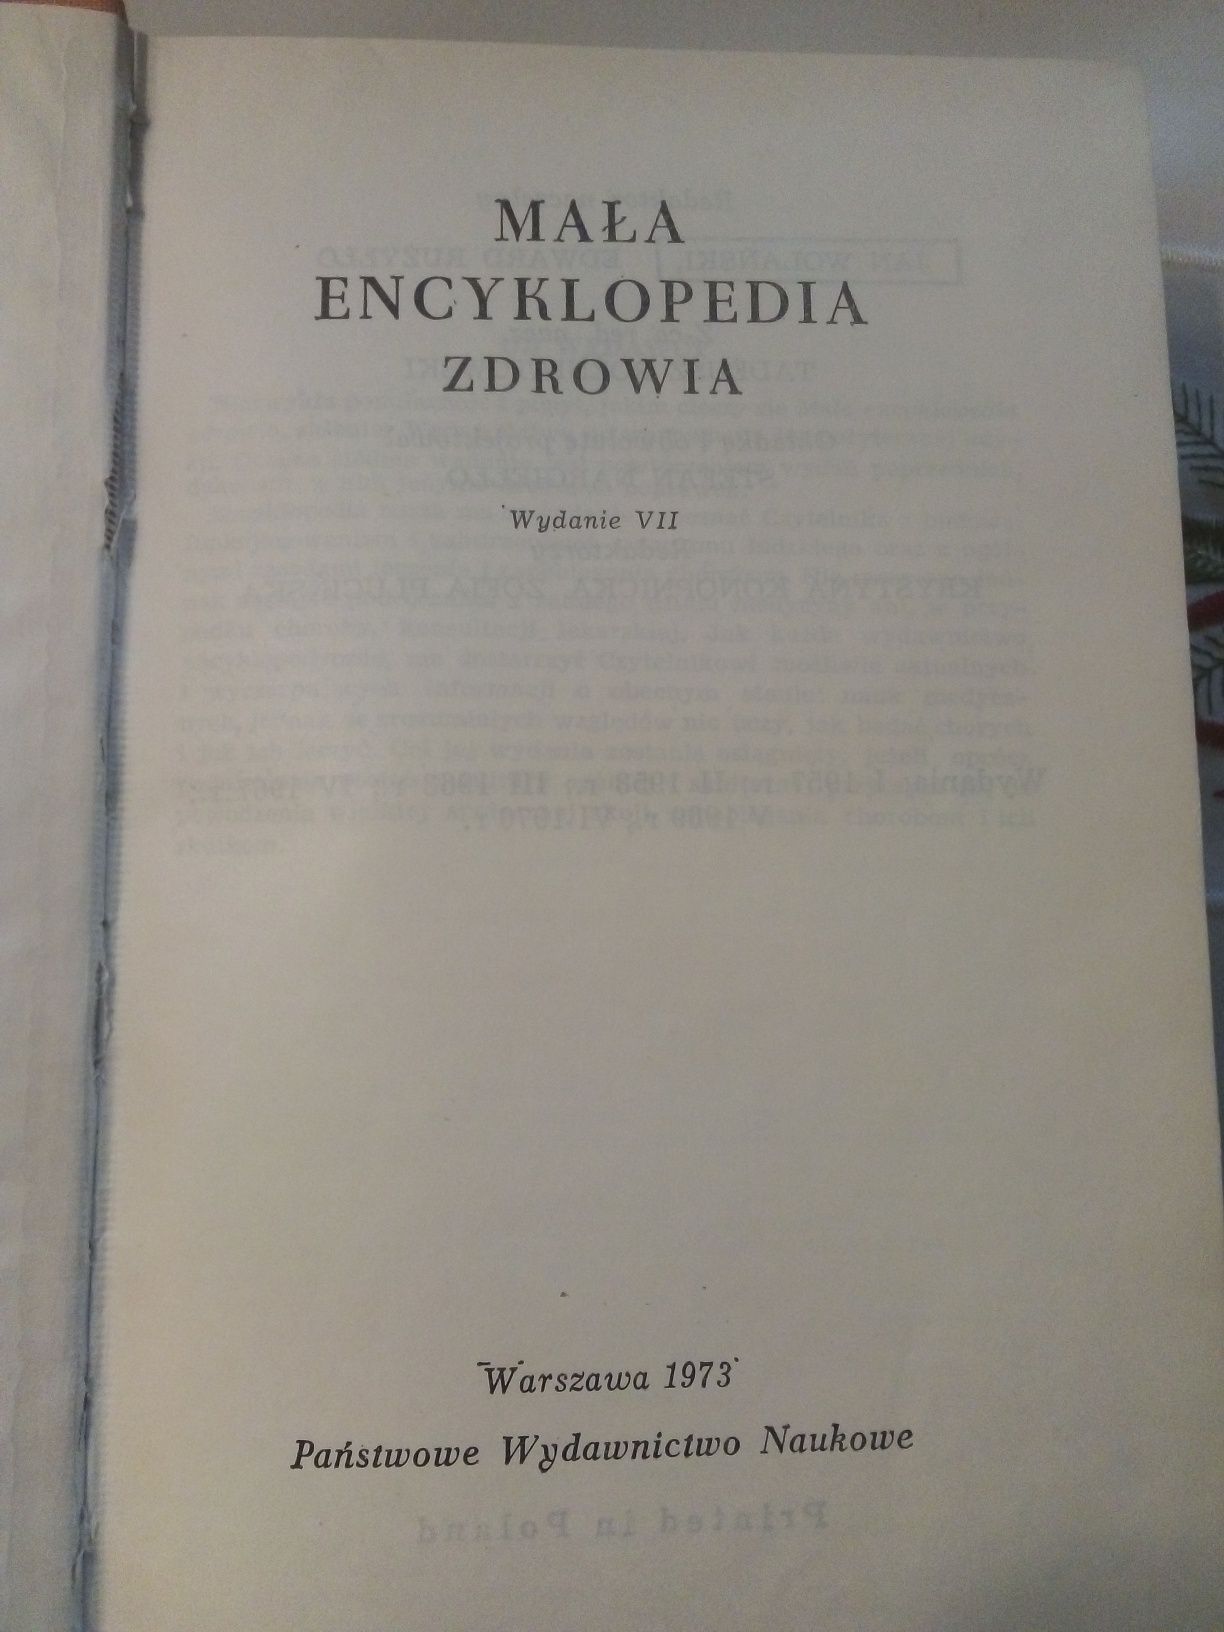 Mała encyklopedia zdrowia, wydanie VII, Państwowe Wydawnictwo Naukowe,